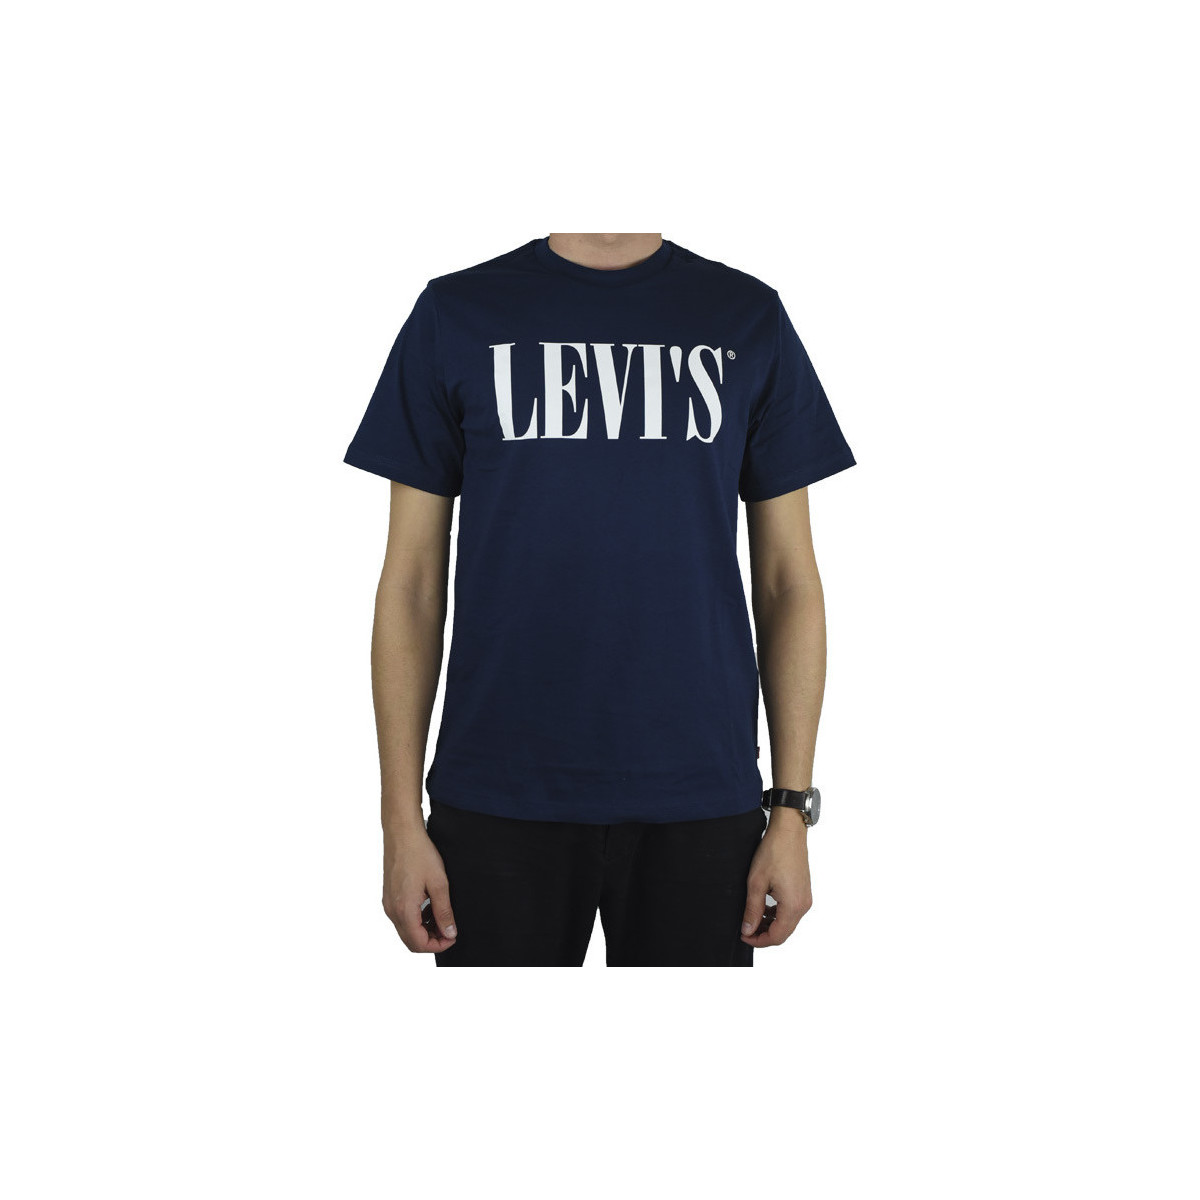 vaatteet Miehet Lyhythihainen t-paita Levi's Relaxed Graphic Tee Sininen